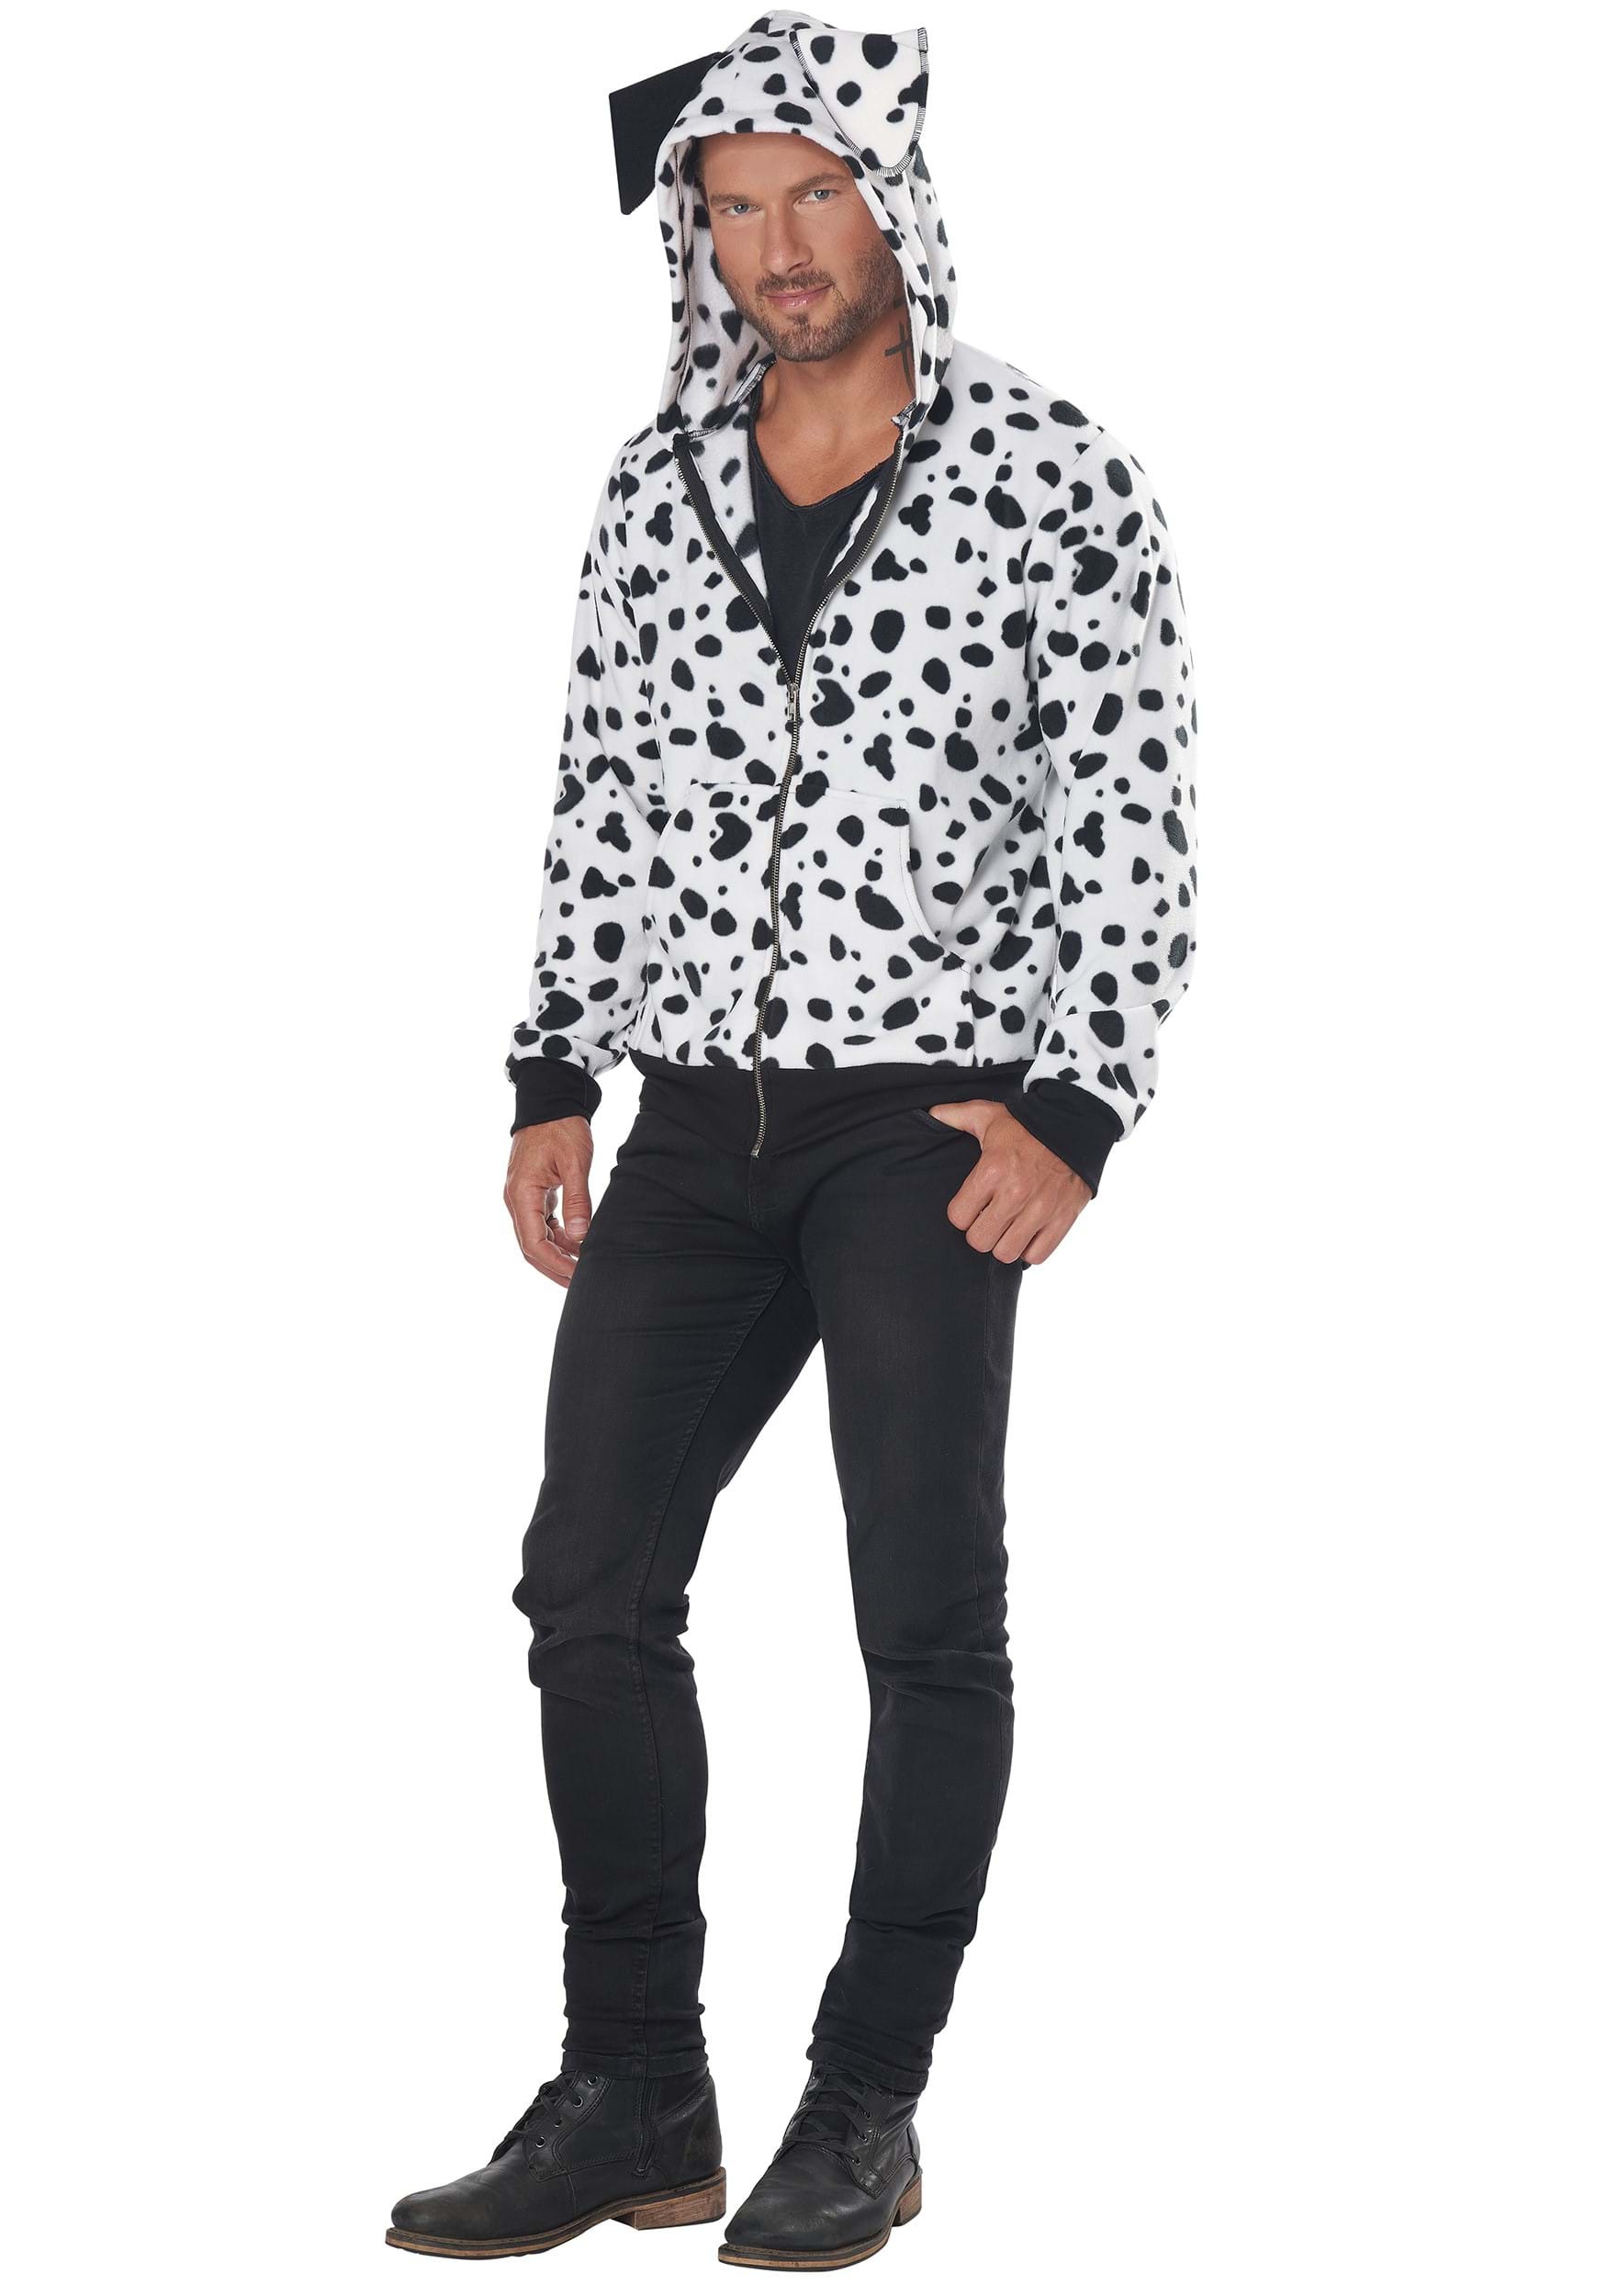 Dalmatian Hoodie Costume For Men